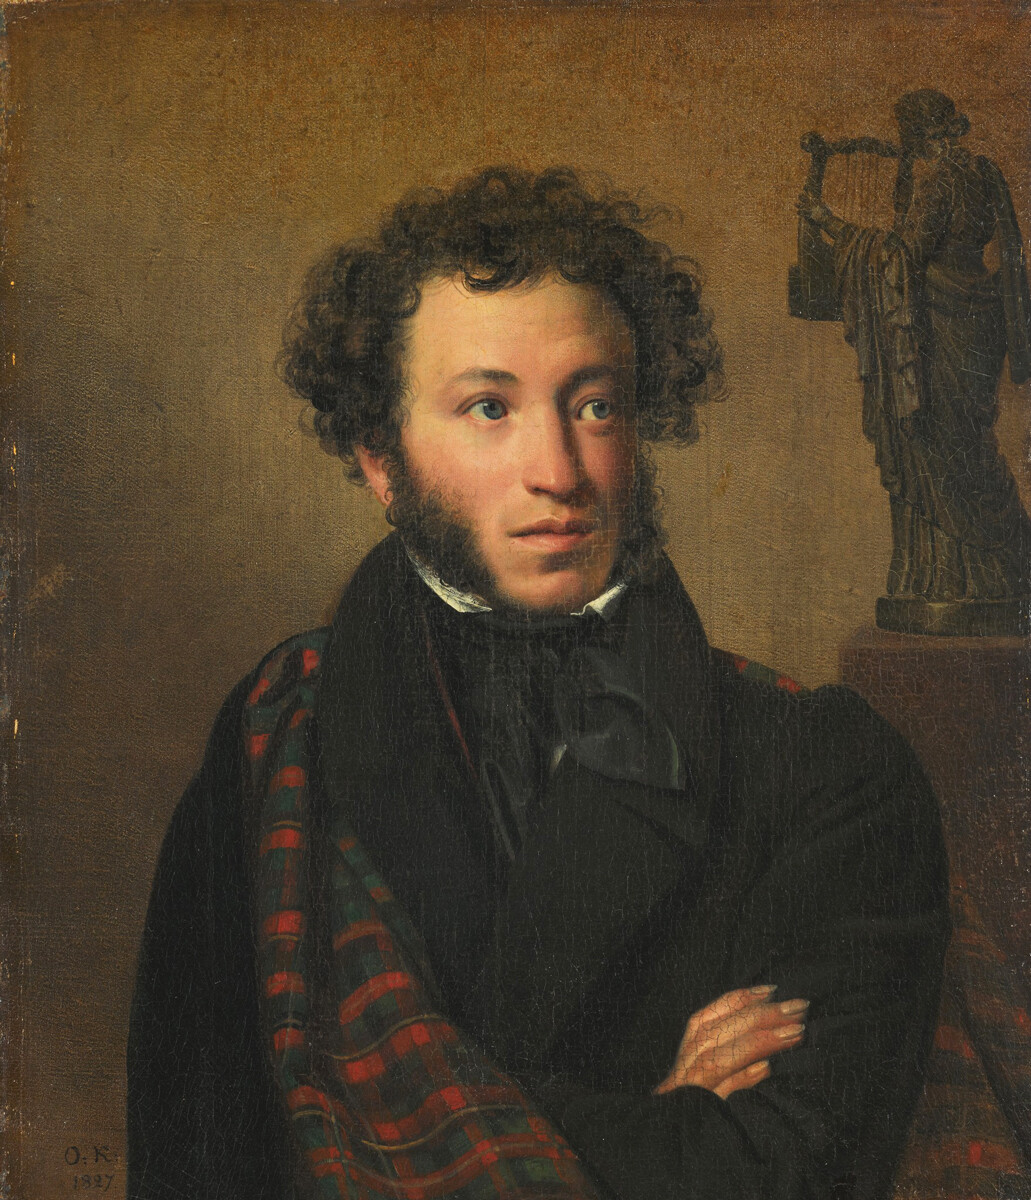  Portret Aleksandra Puškina, 1827, Orest Kiprenski